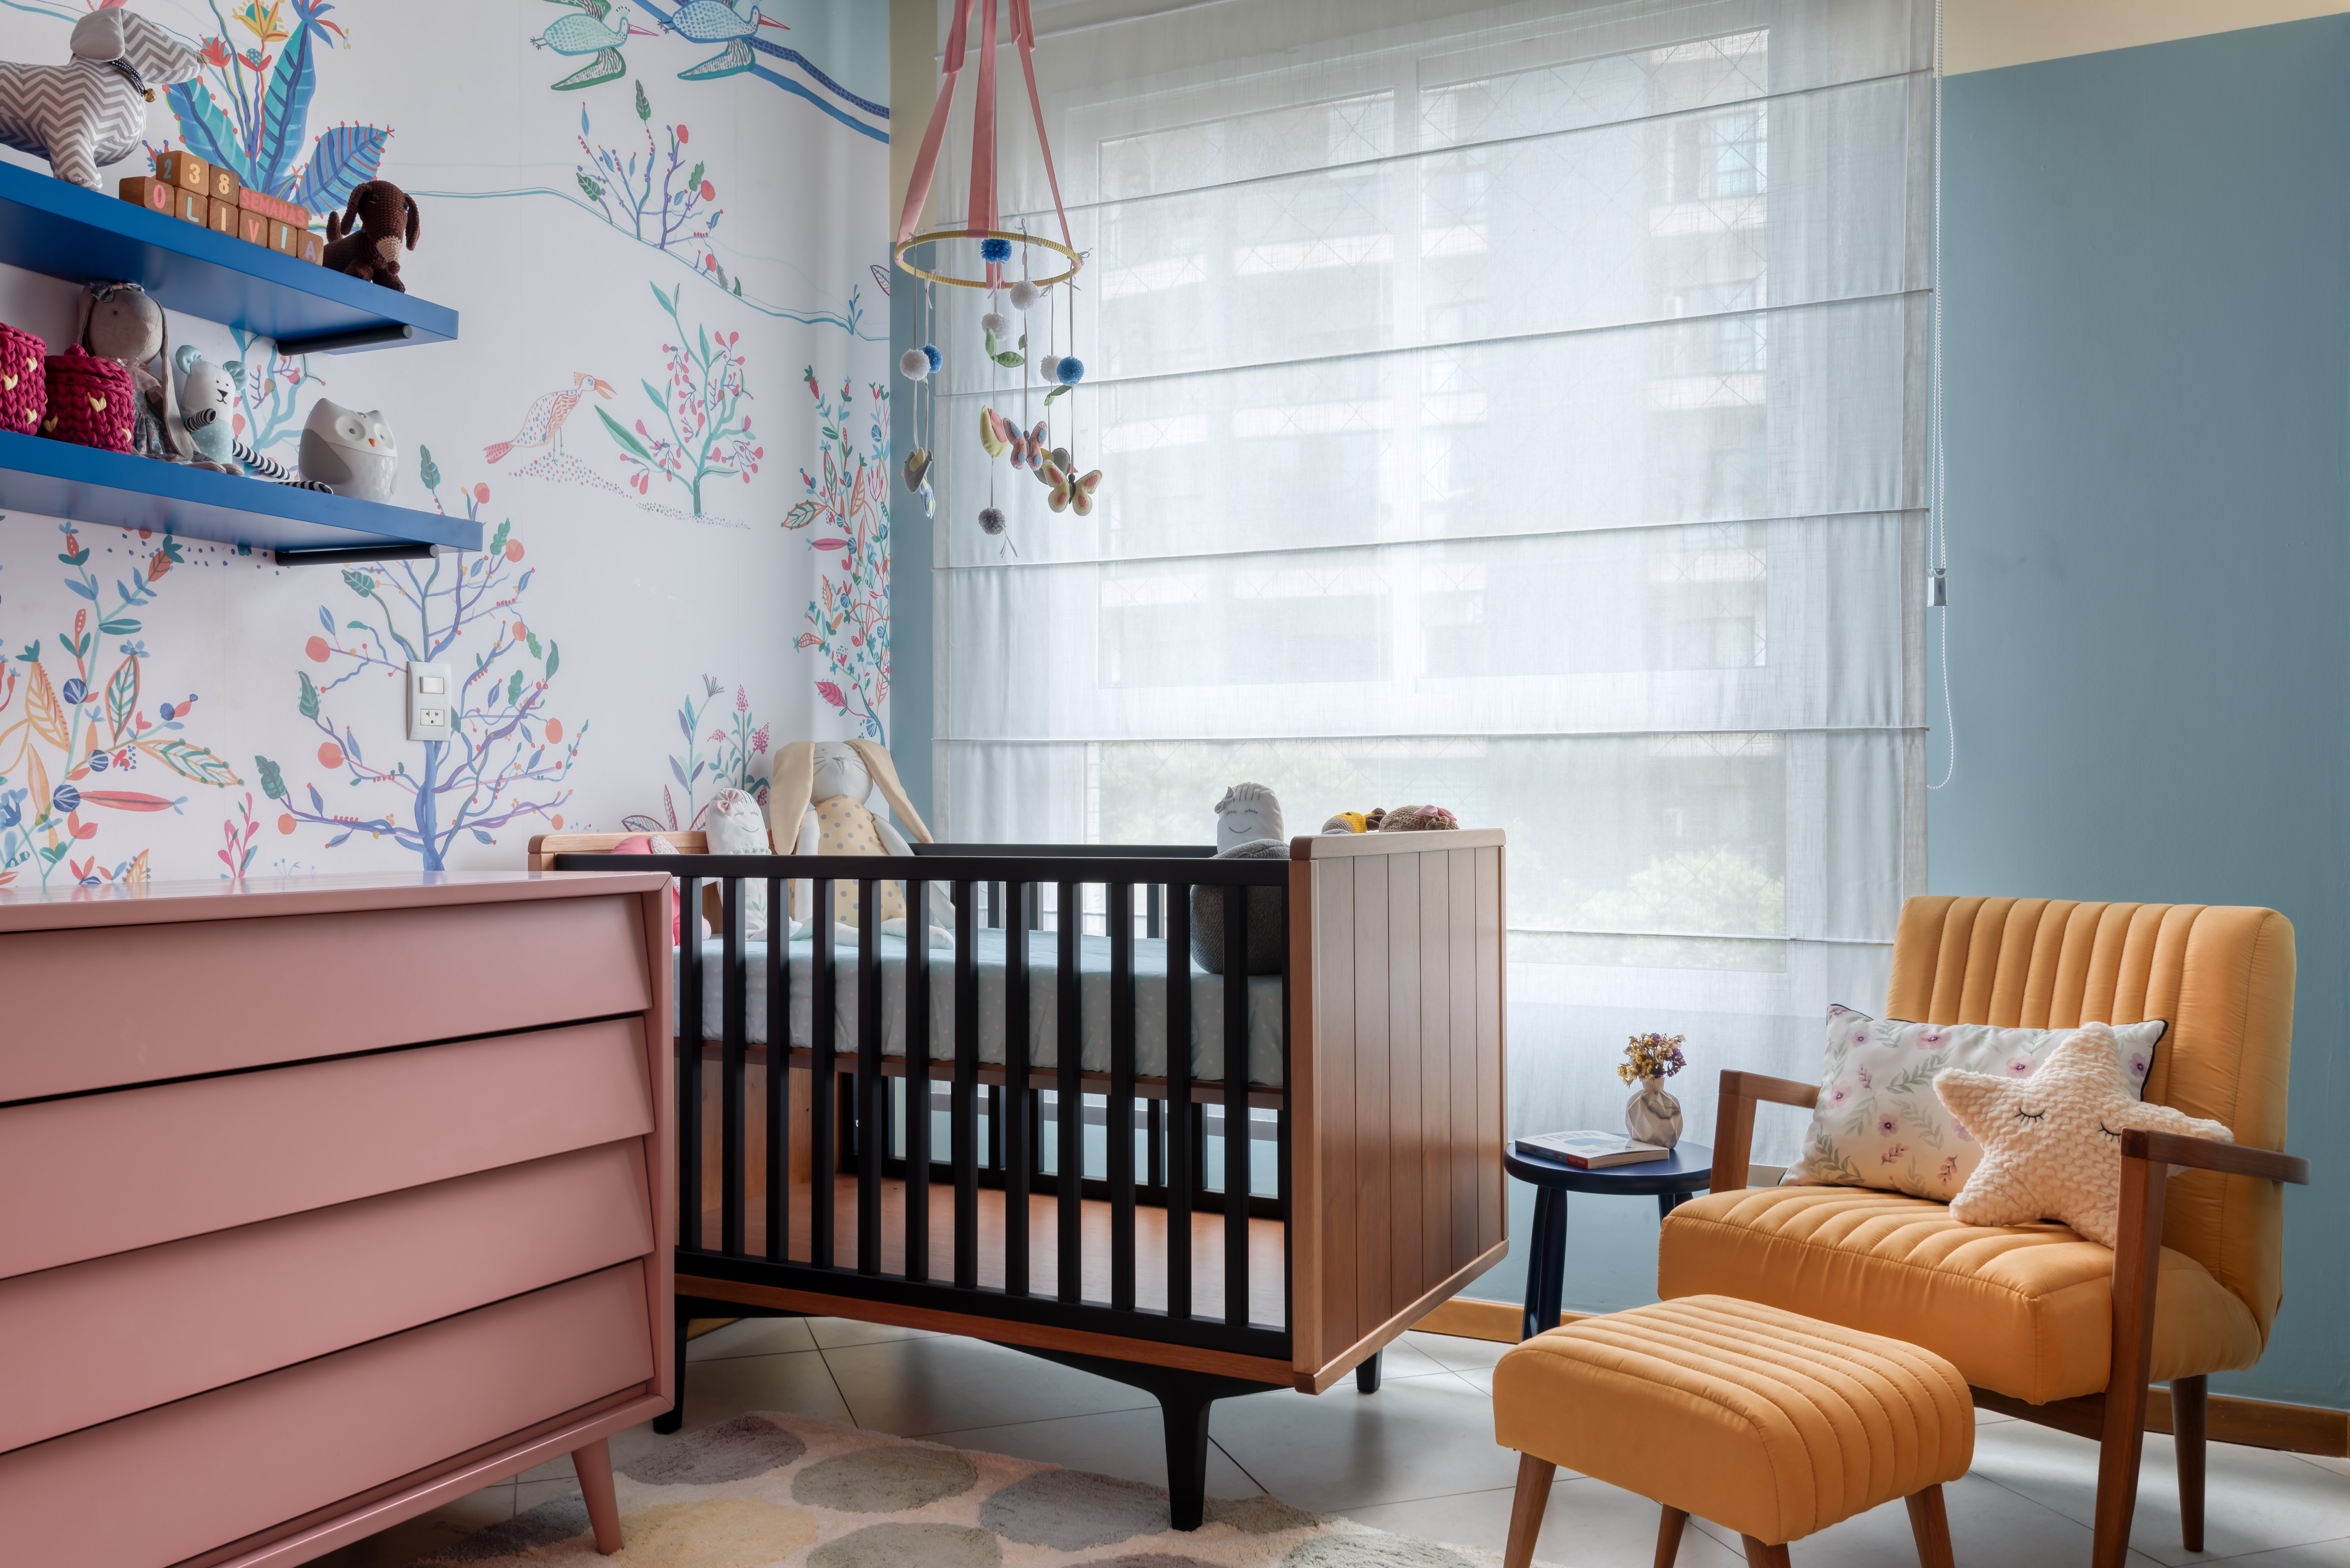 Nesse quarto infantil, os três mobiliários principais formam um triangulo, segundo a arquiteta Fernanda Calazans